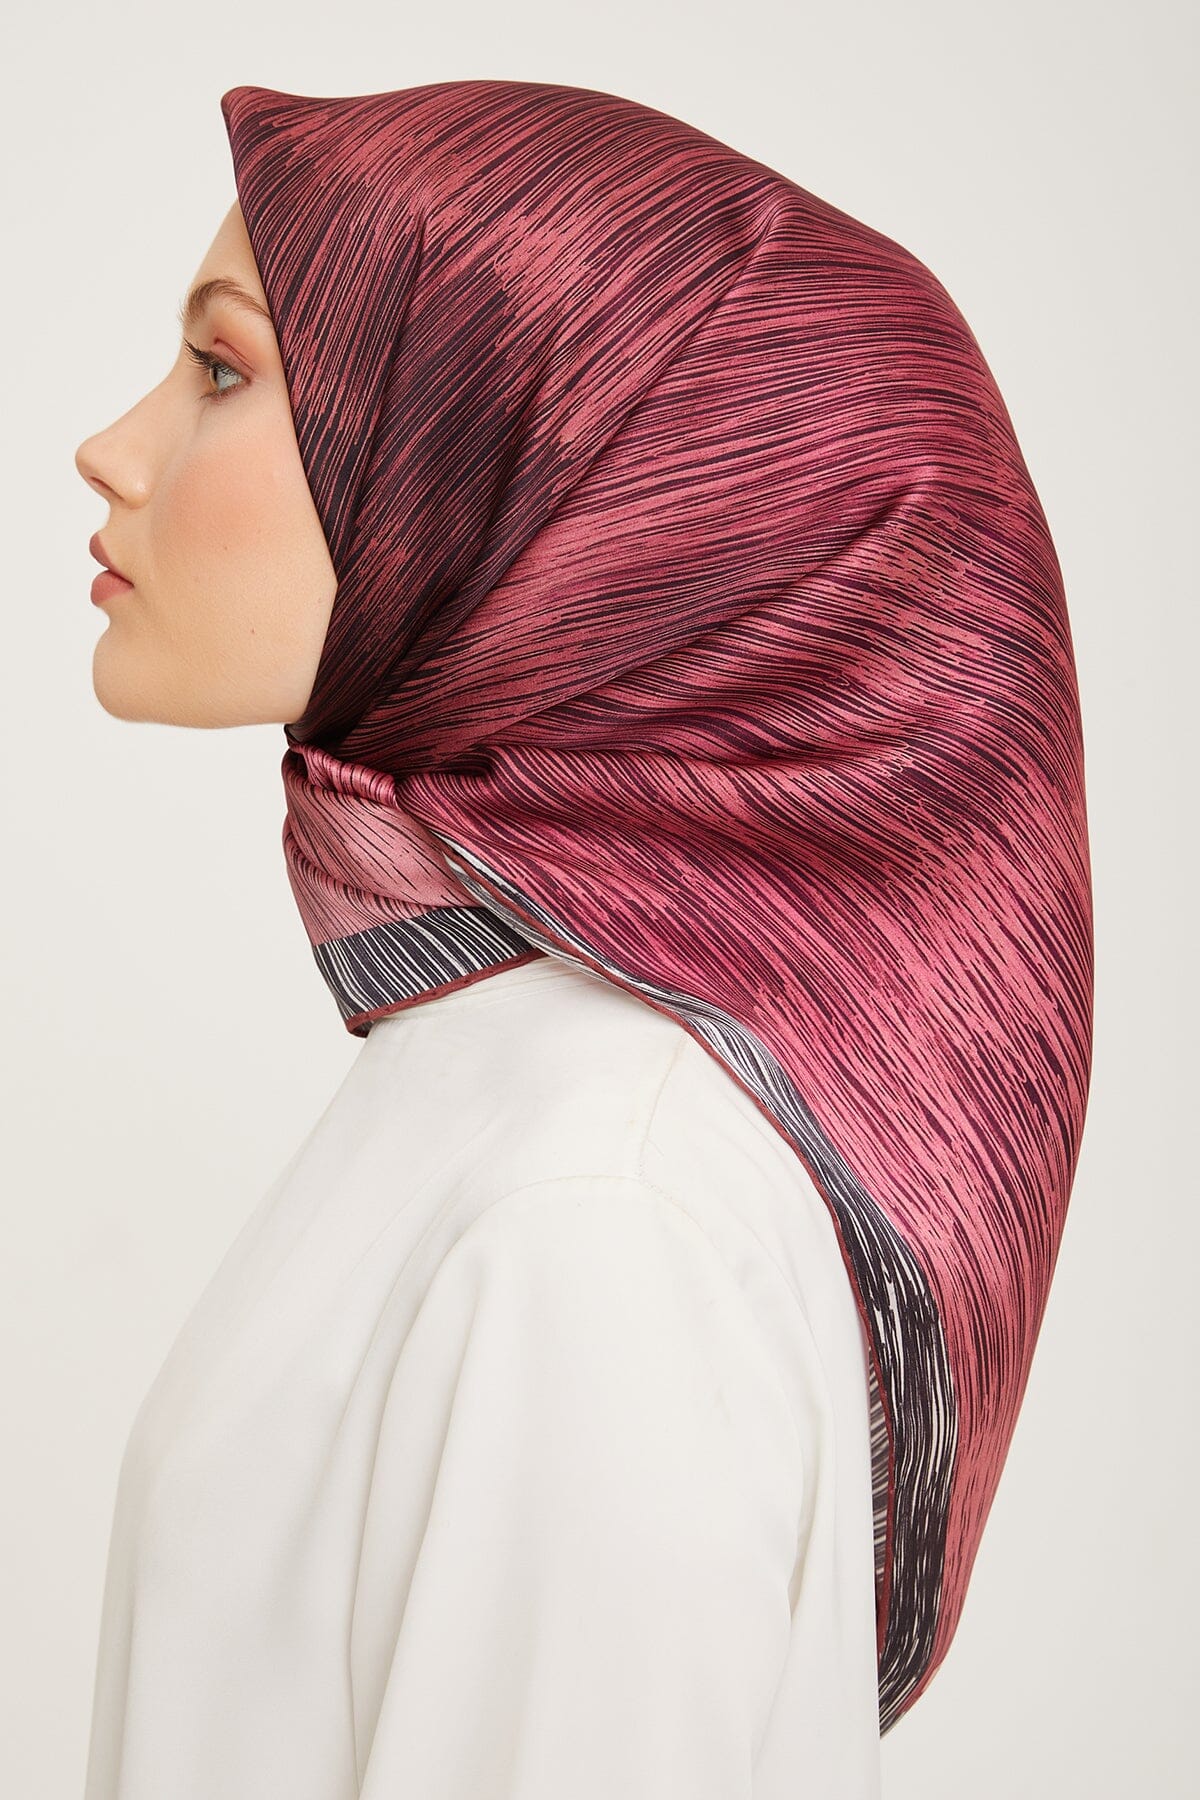 Armine Myers Silk Hair Wrap #33 Silk Hijabs,Armine Armine 